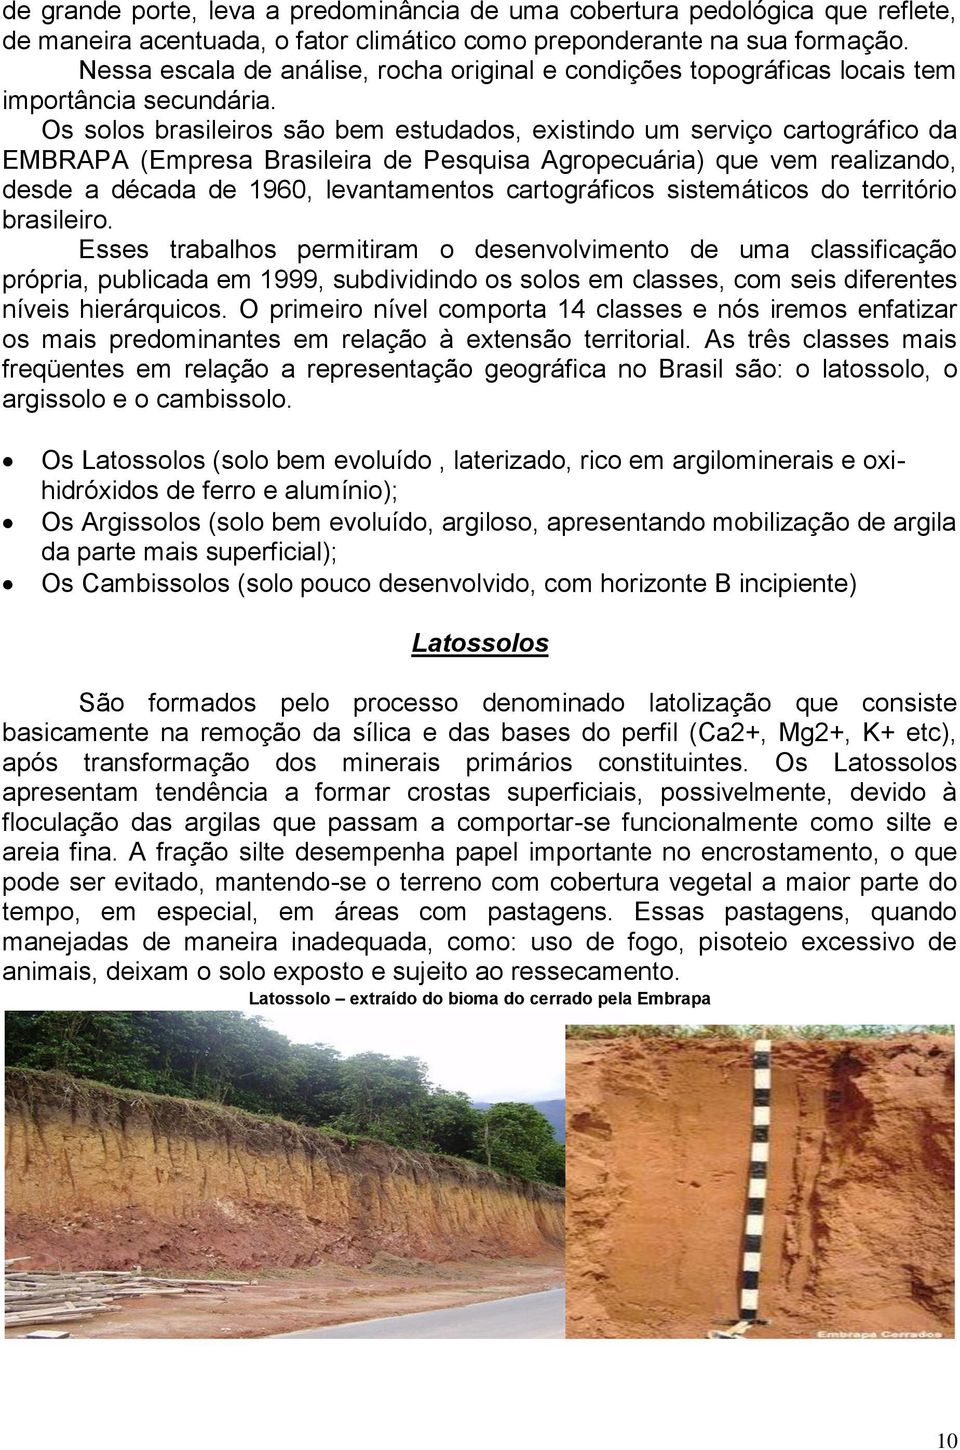 Os solos brasileiros são bem estudados, existindo um serviço cartográfico da EMBRAPA (Empresa Brasileira de Pesquisa Agropecuária) que vem realizando, desde a década de 1960, levantamentos